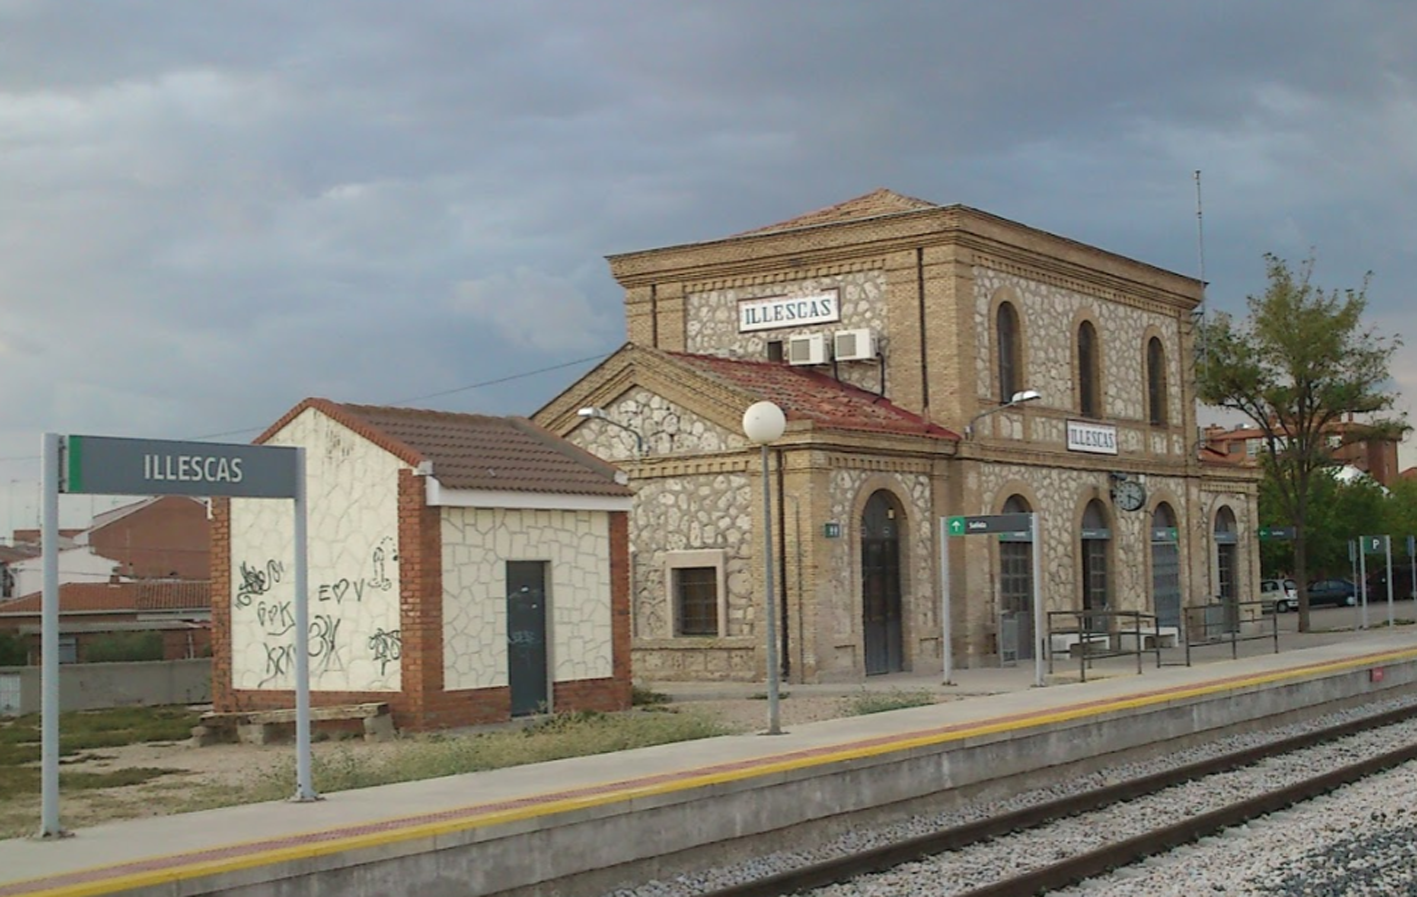 El accidente se ha producido a apenas 300 metros de la estación de tren de Illescas.